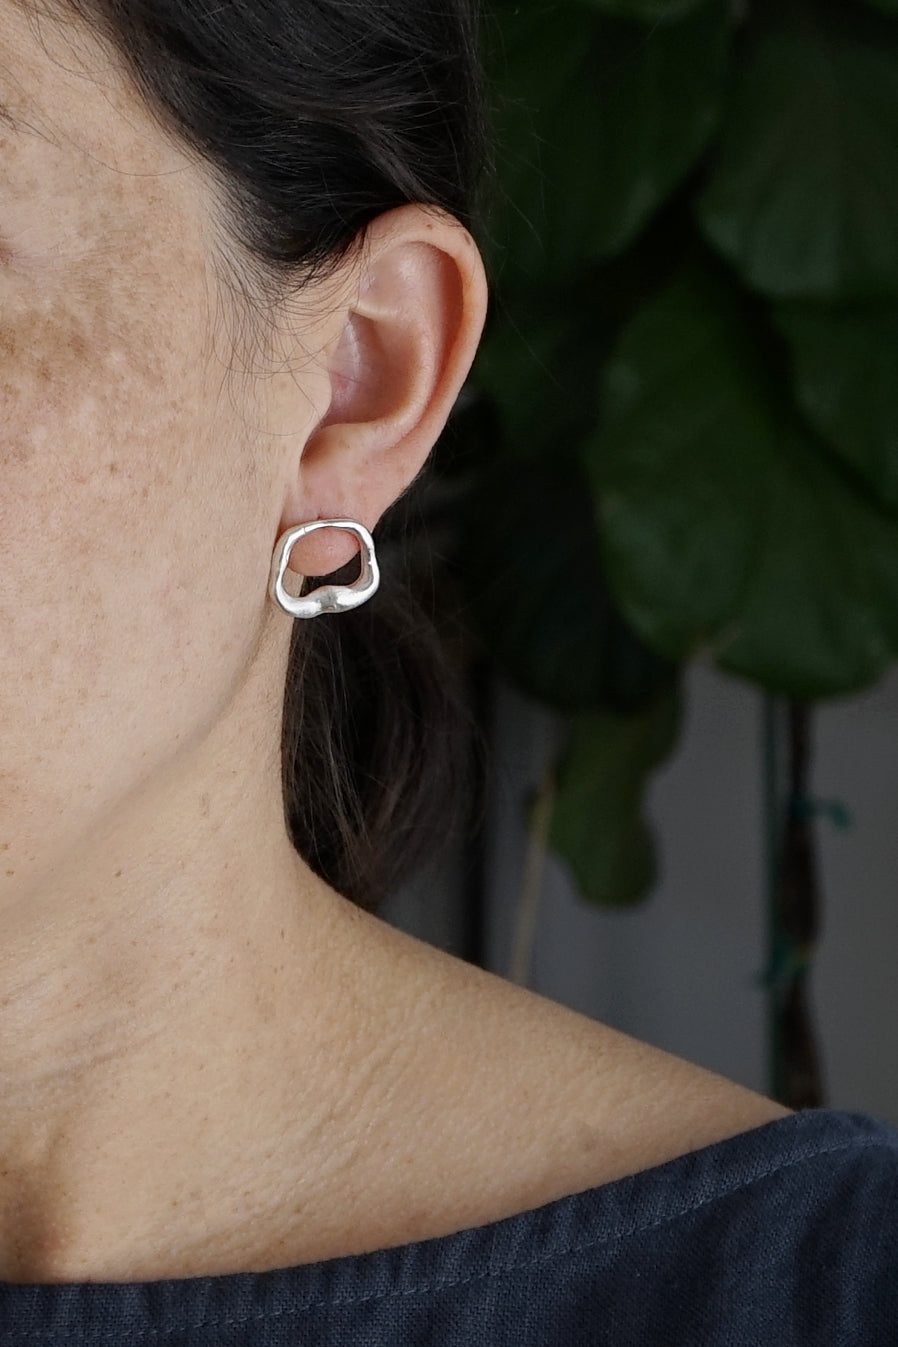 Abstract shape earrings